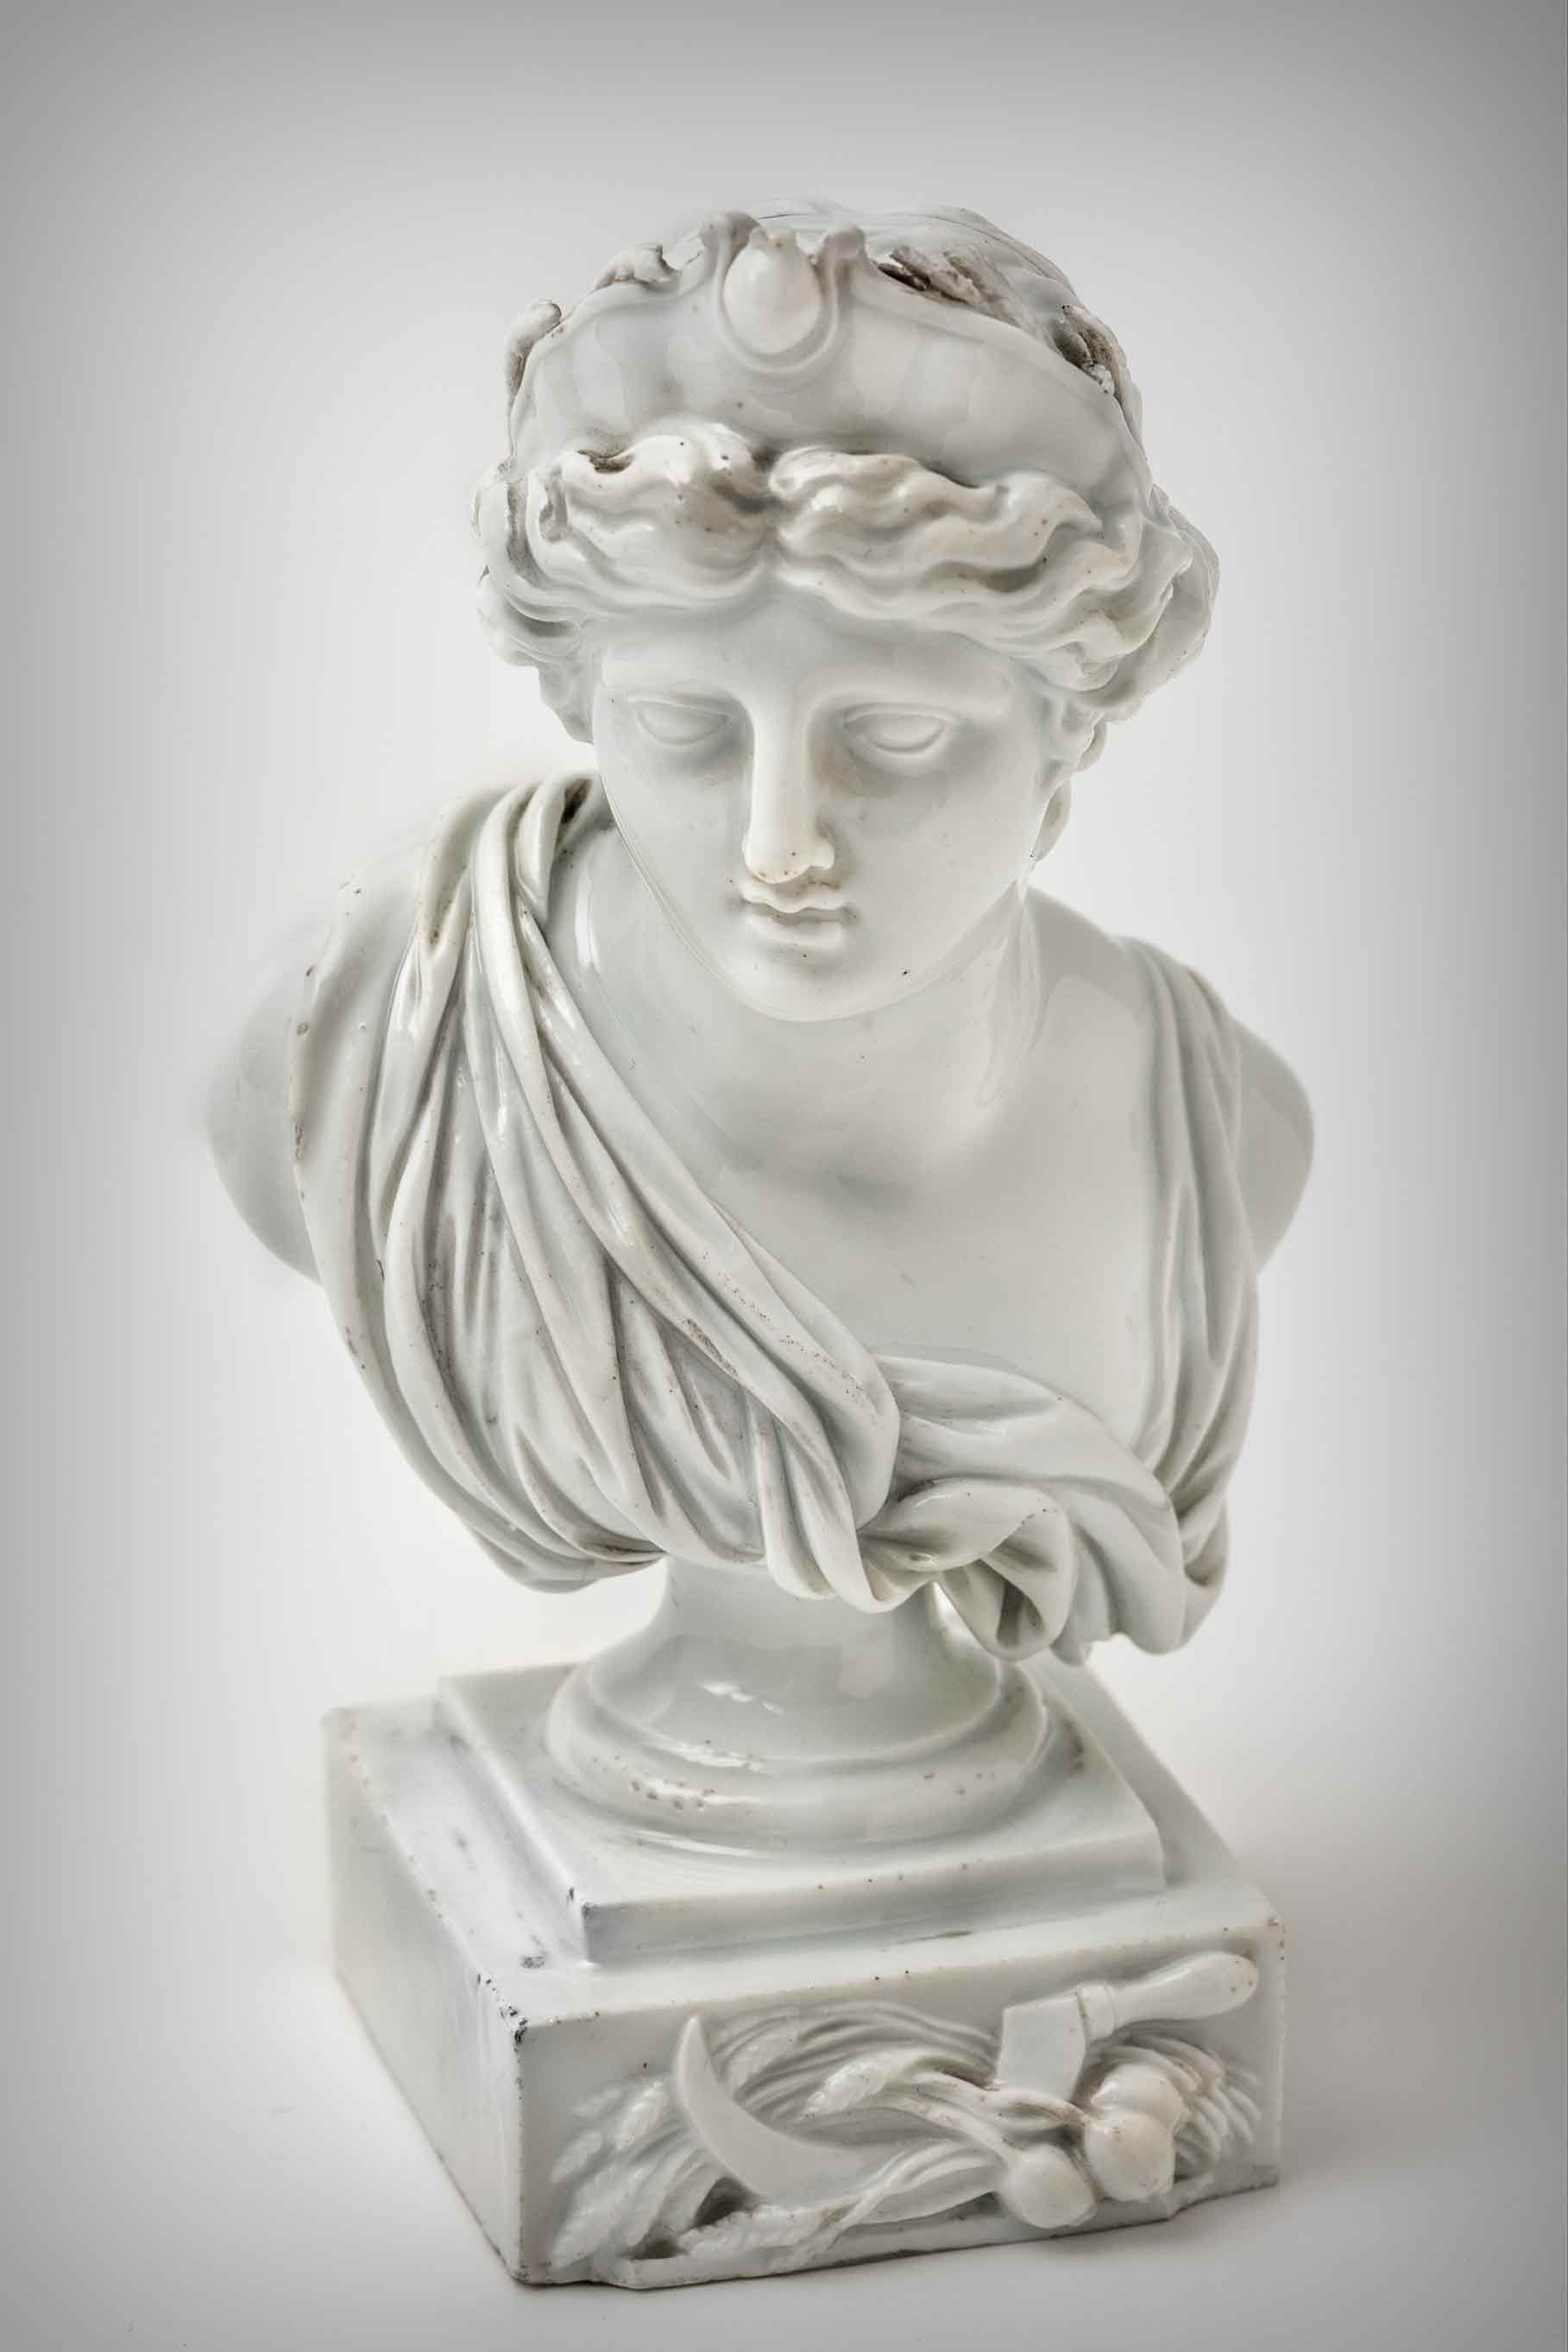 Kromě rokokově tvarovaných skupin vycházely z Míšně i antikizující figurální výrobky, jak dokládá busta bohyně lovu a Měsíce Artemidy.